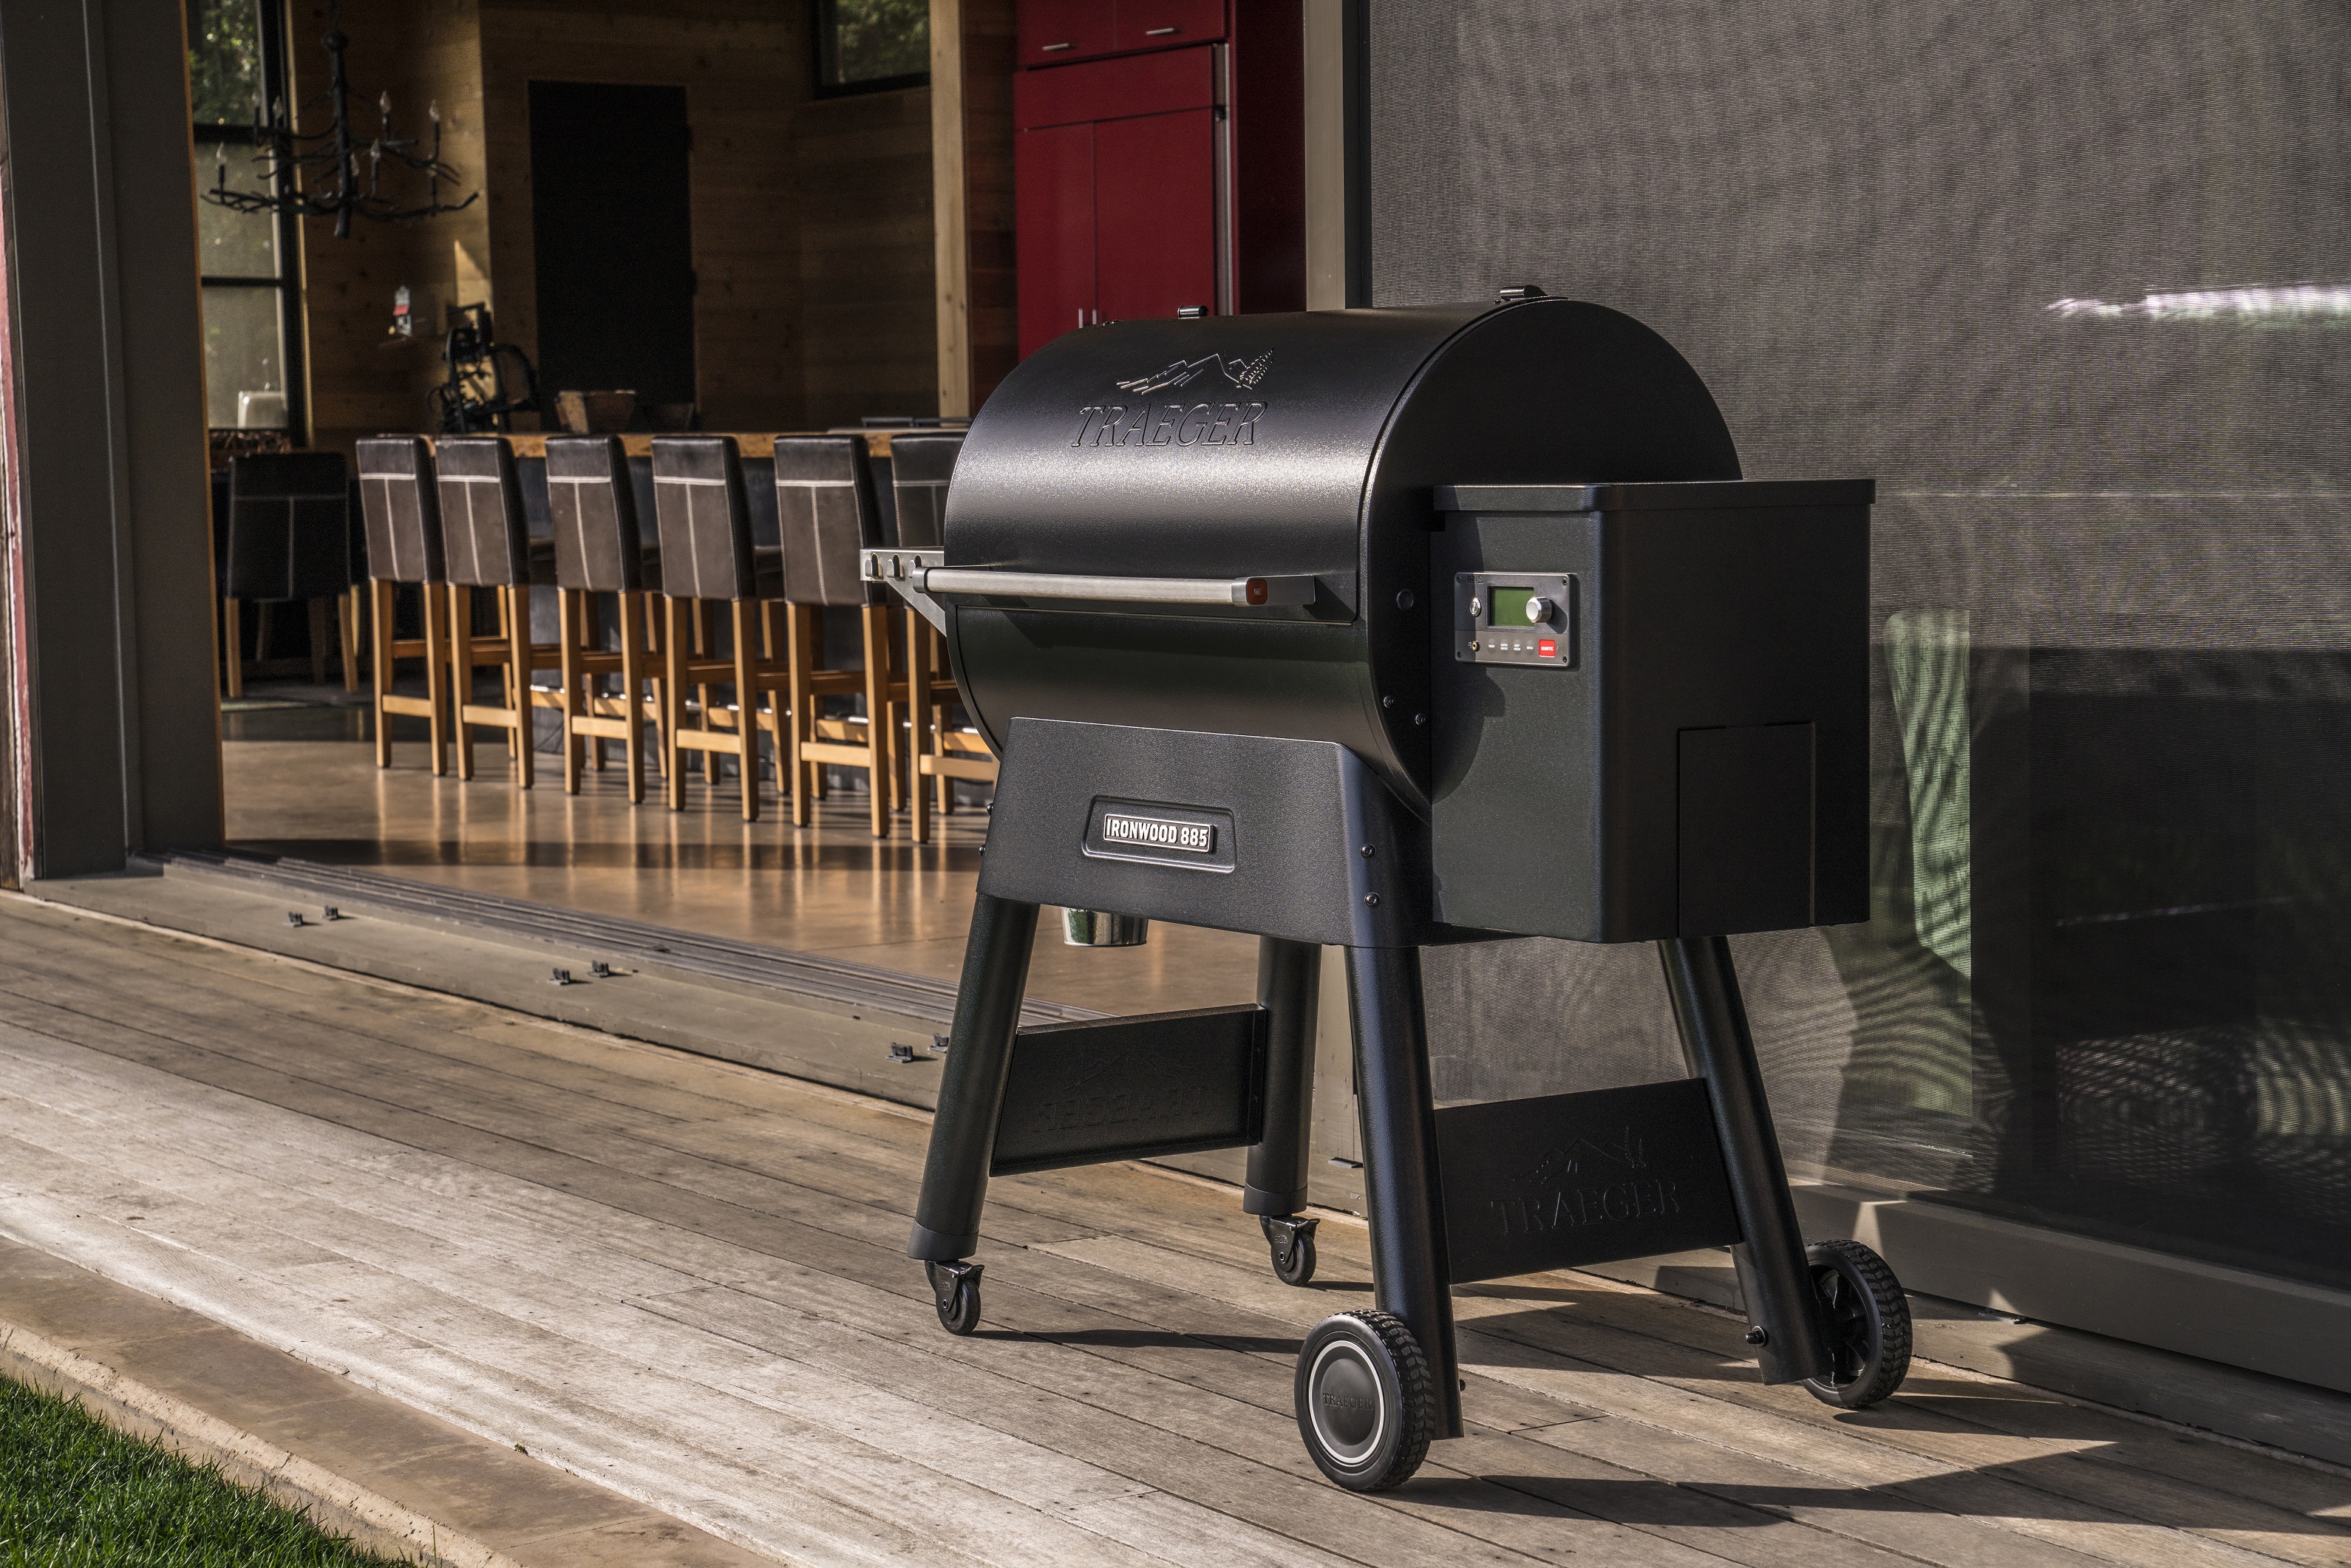 traeger 2019 new grills ironwood 885 lifestyle aptos002